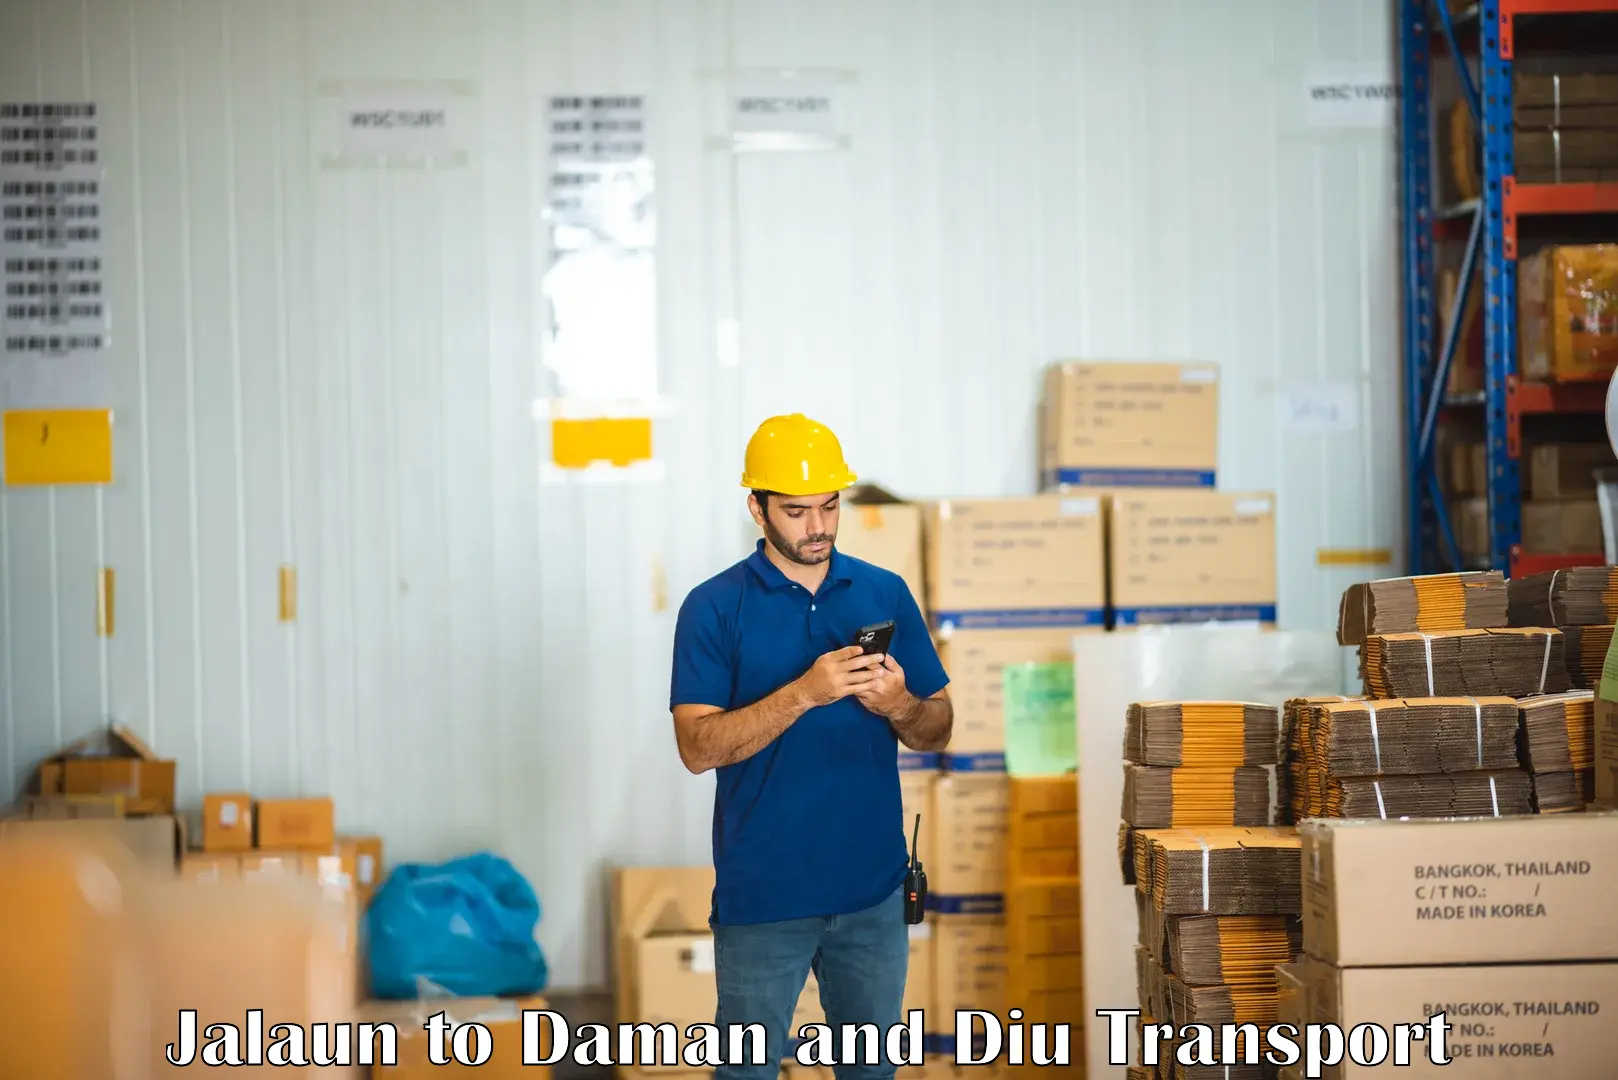 Furniture transport service Jalaun to Daman and Diu